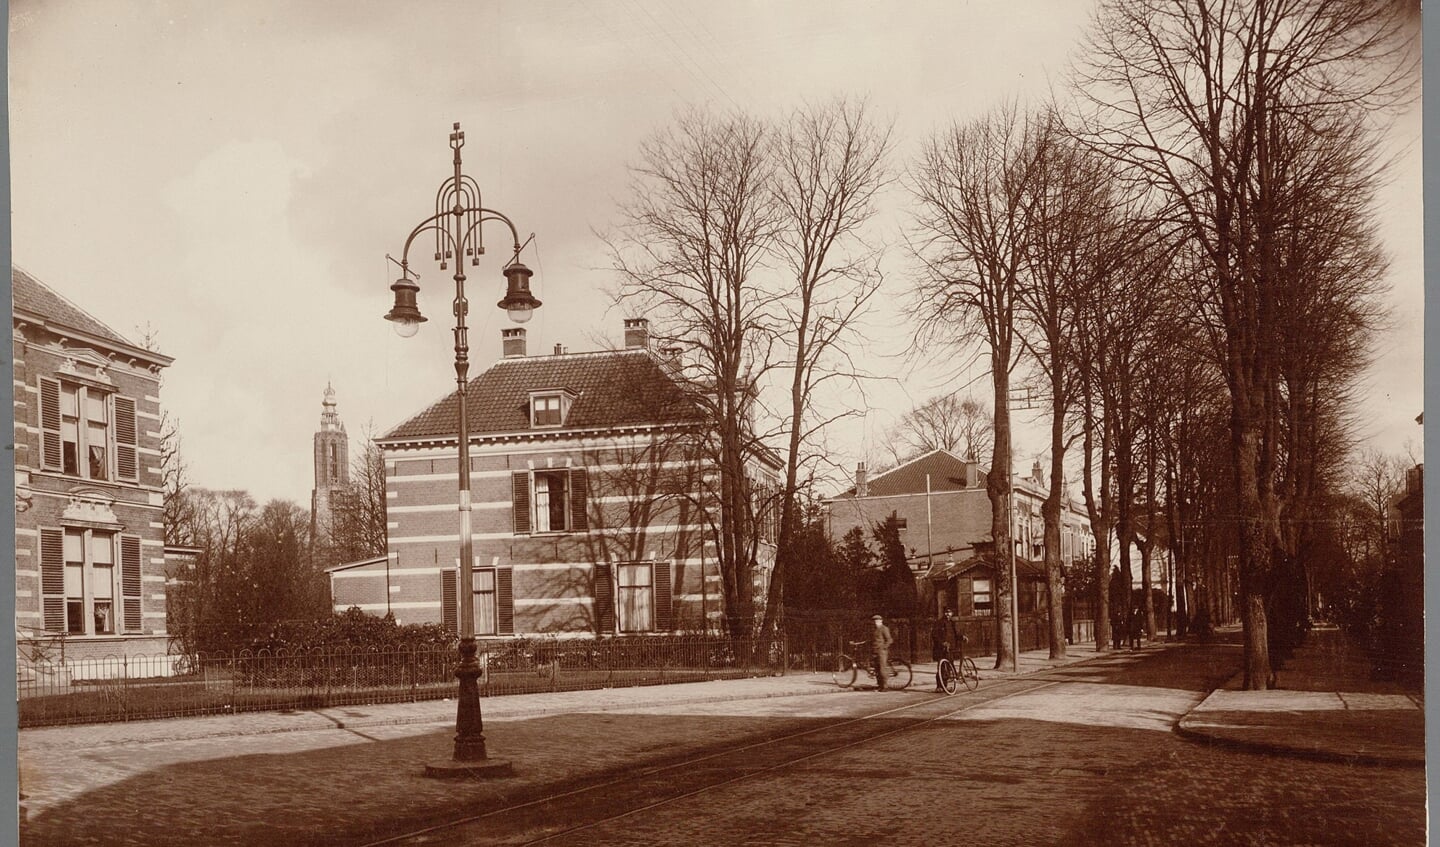  Opvallend is de tramrails in het wegdek waar de paardentram van het Stationsplein tot aan de Kamp van 1901 tot 1917 overheen reed.